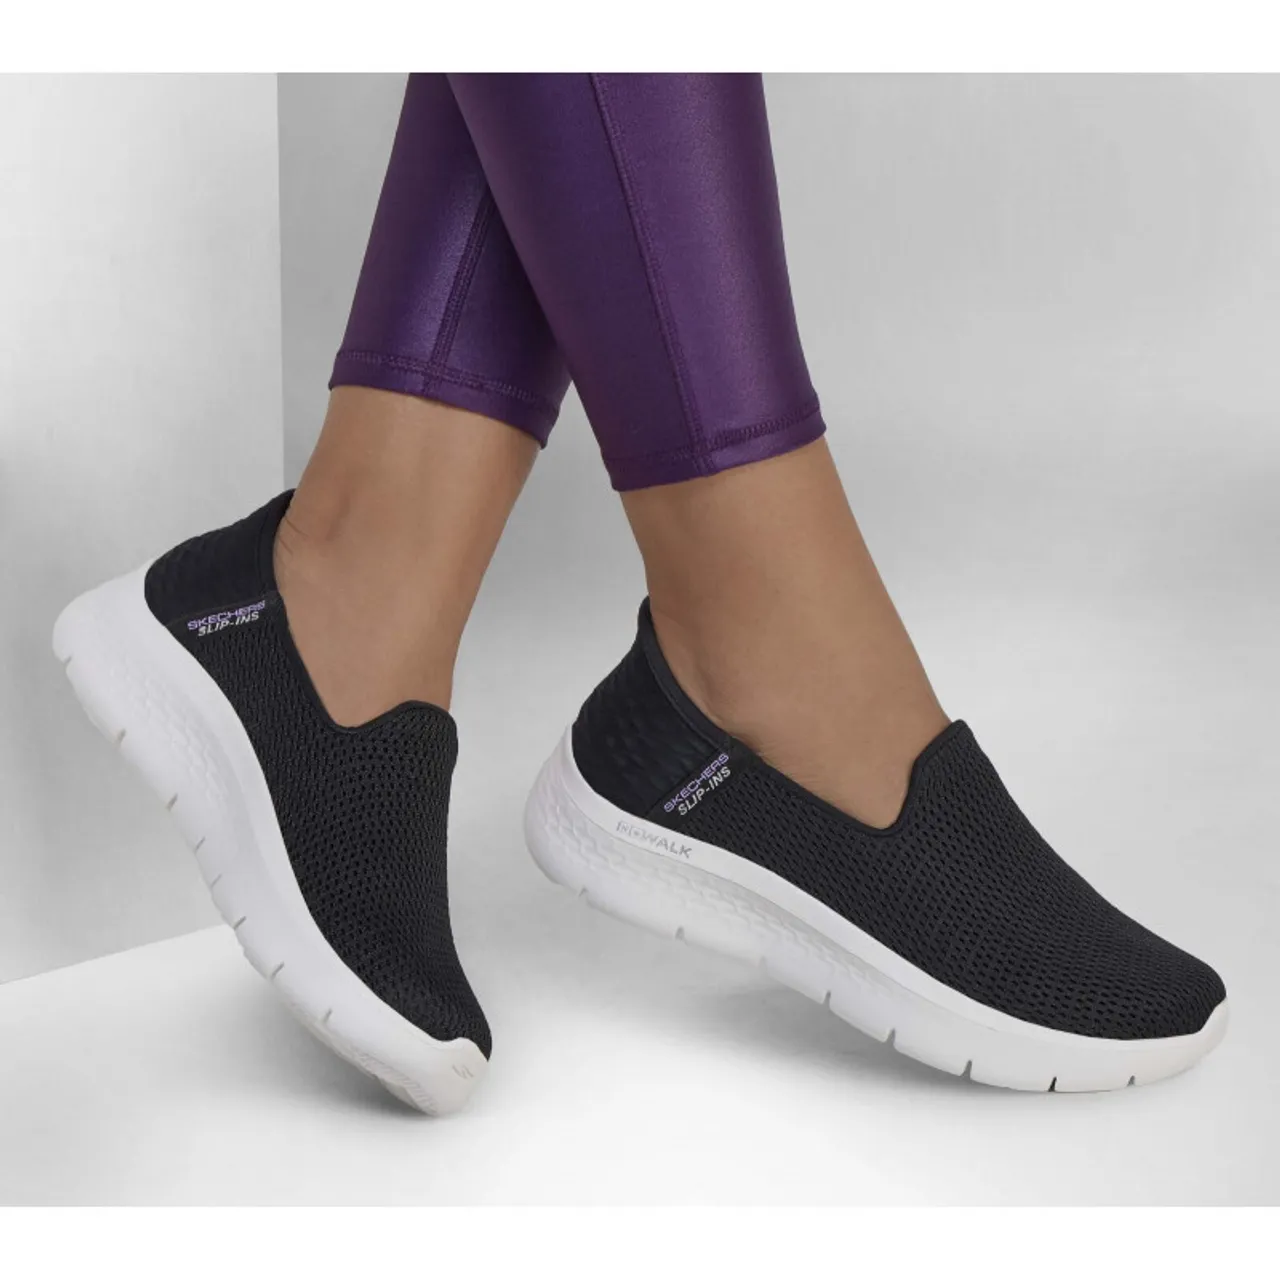 Skechers GO Walk Flex - Relish - Schuhe - Damen Black / White 37